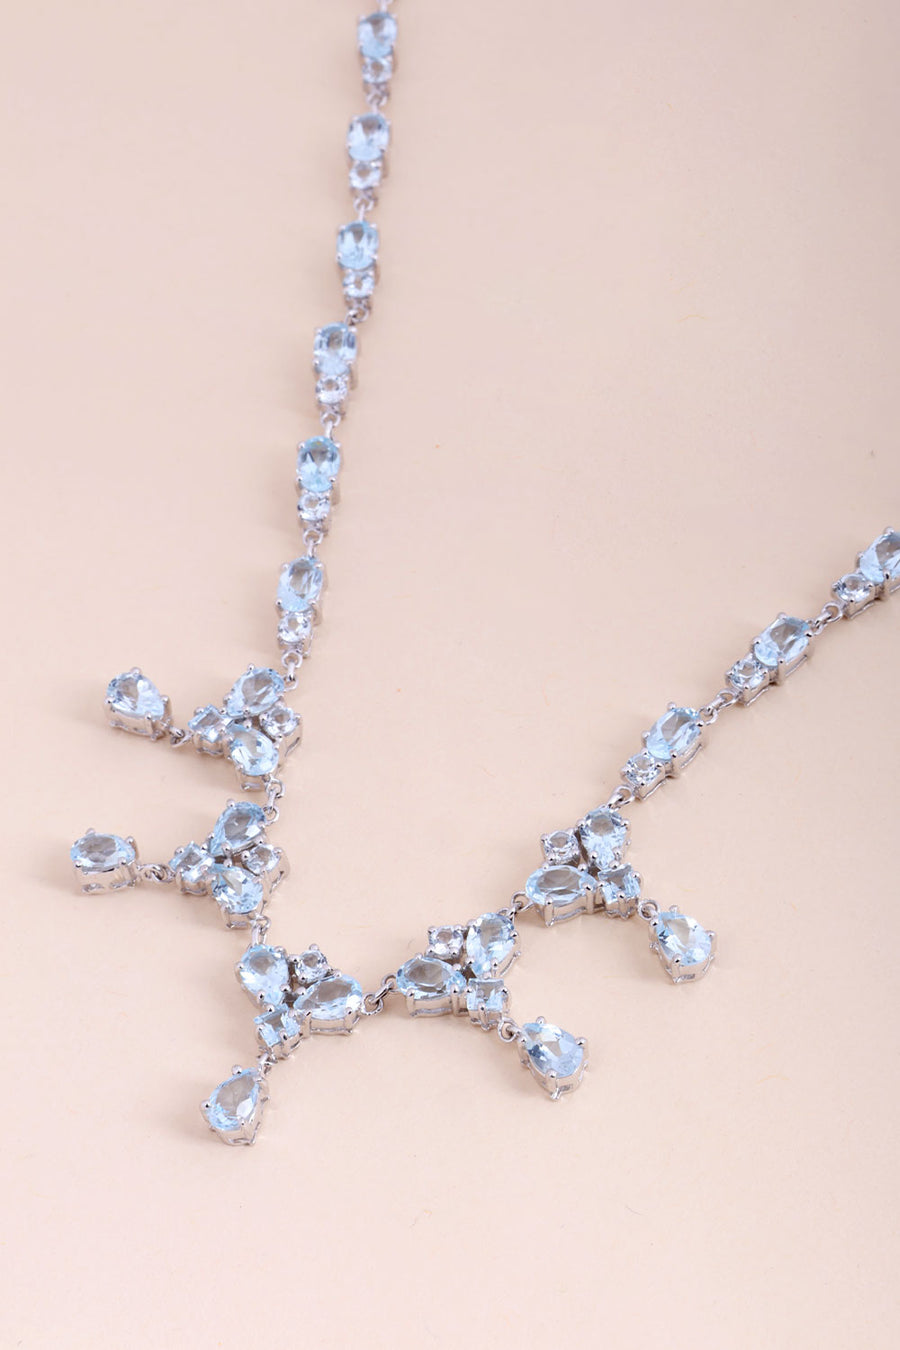 Blue Topaz Sterling Silver Necklace 10067125 - Avishya